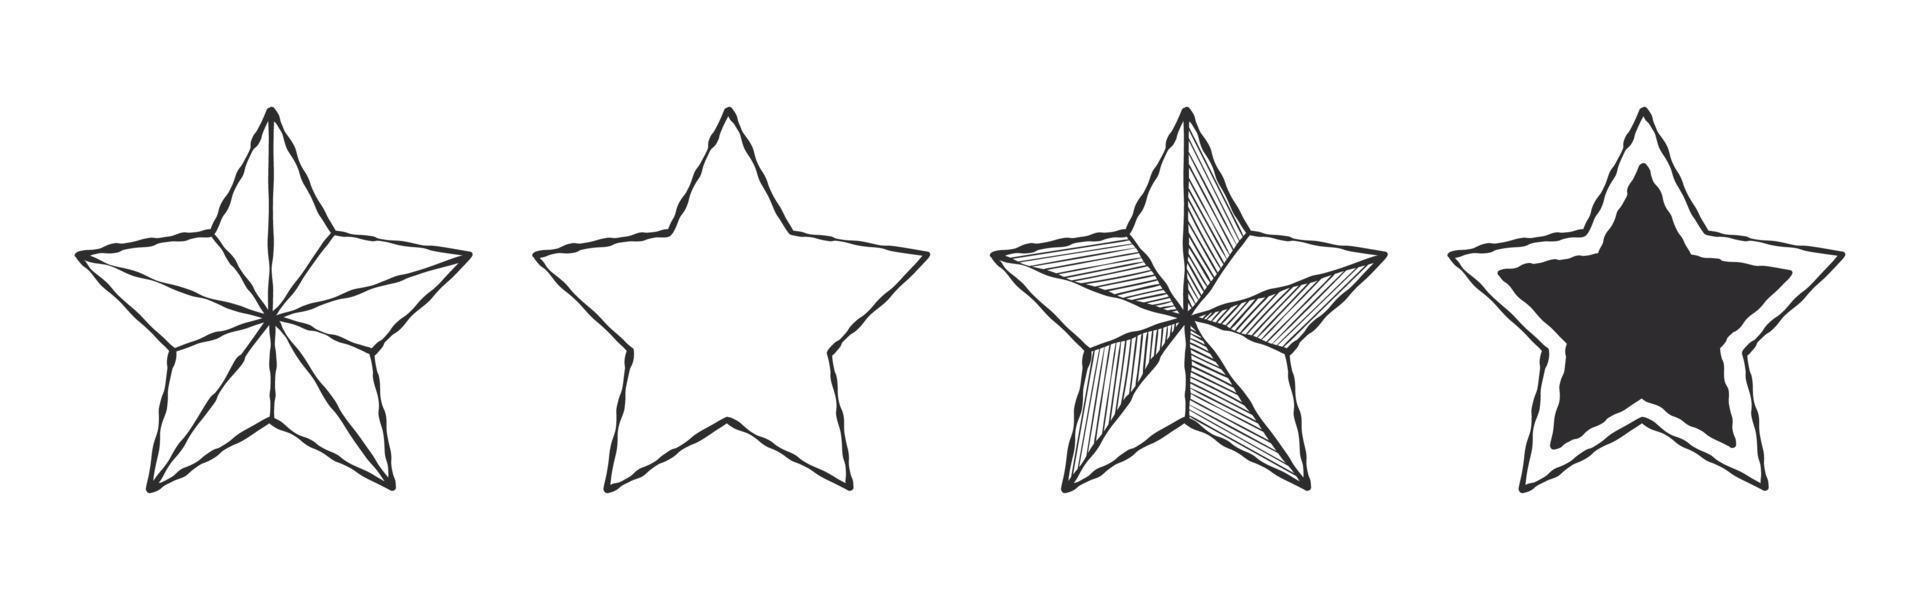 Sternsymbole gesetzt. von Hand gezeichnete Sterne mit unterschiedlichen Texturen. Vektorbilder vektor